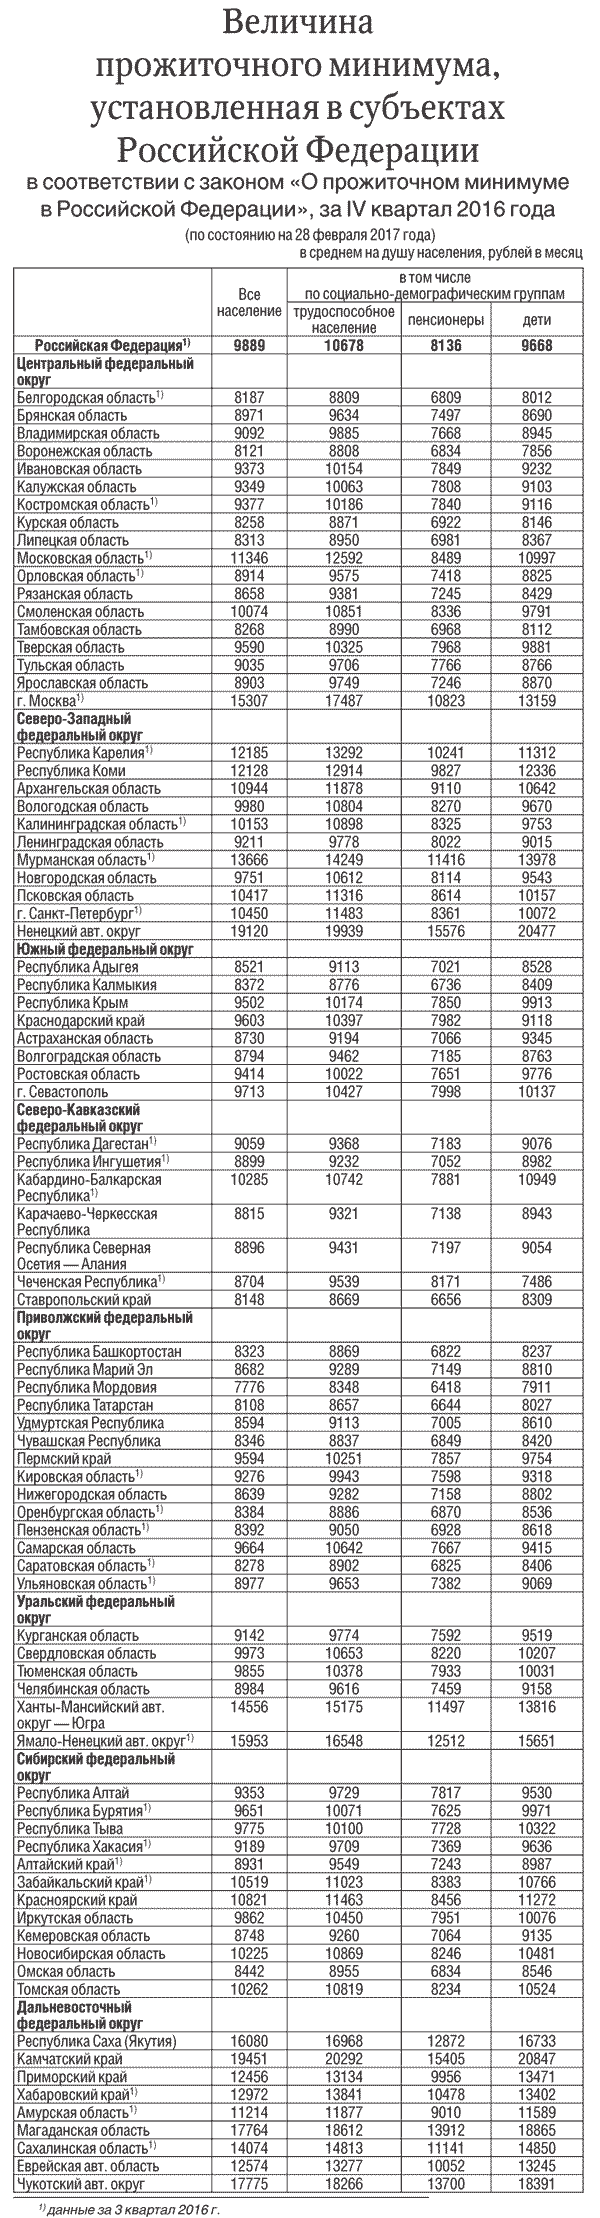 23,44 Млн рублей составляла задолженность донских предприятий по зарплате